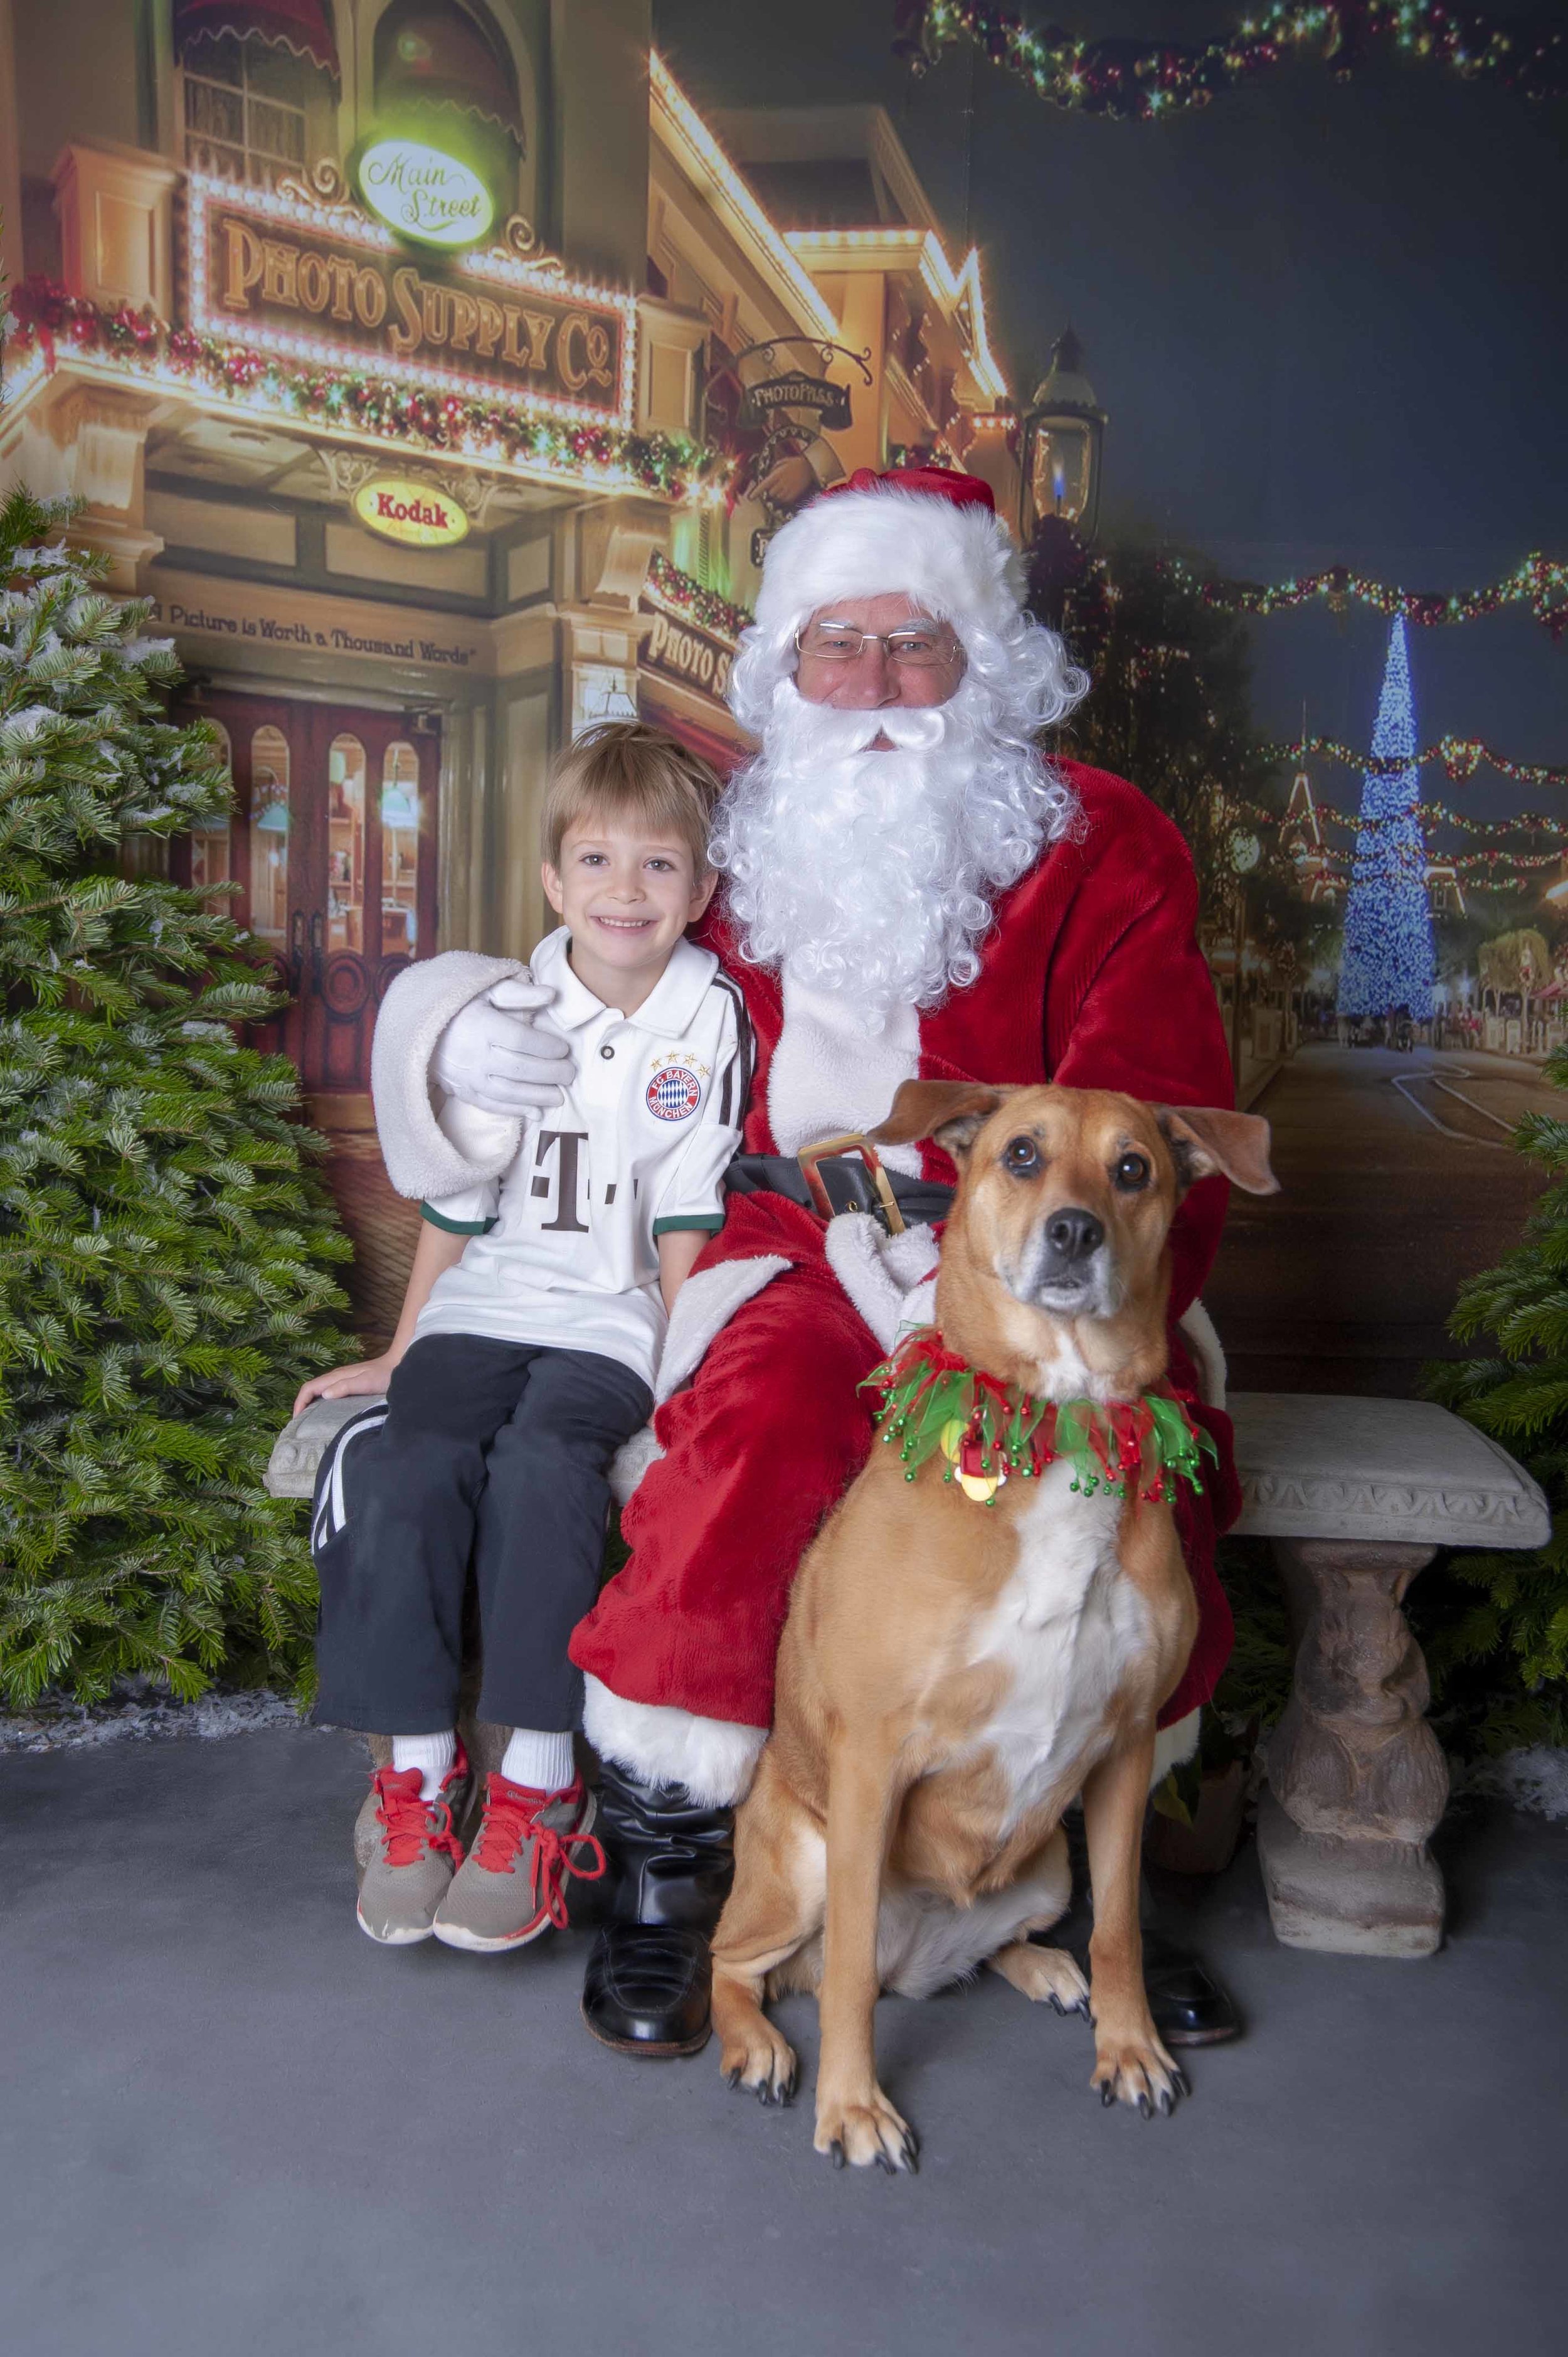 A Boy, his Dog and Santa!